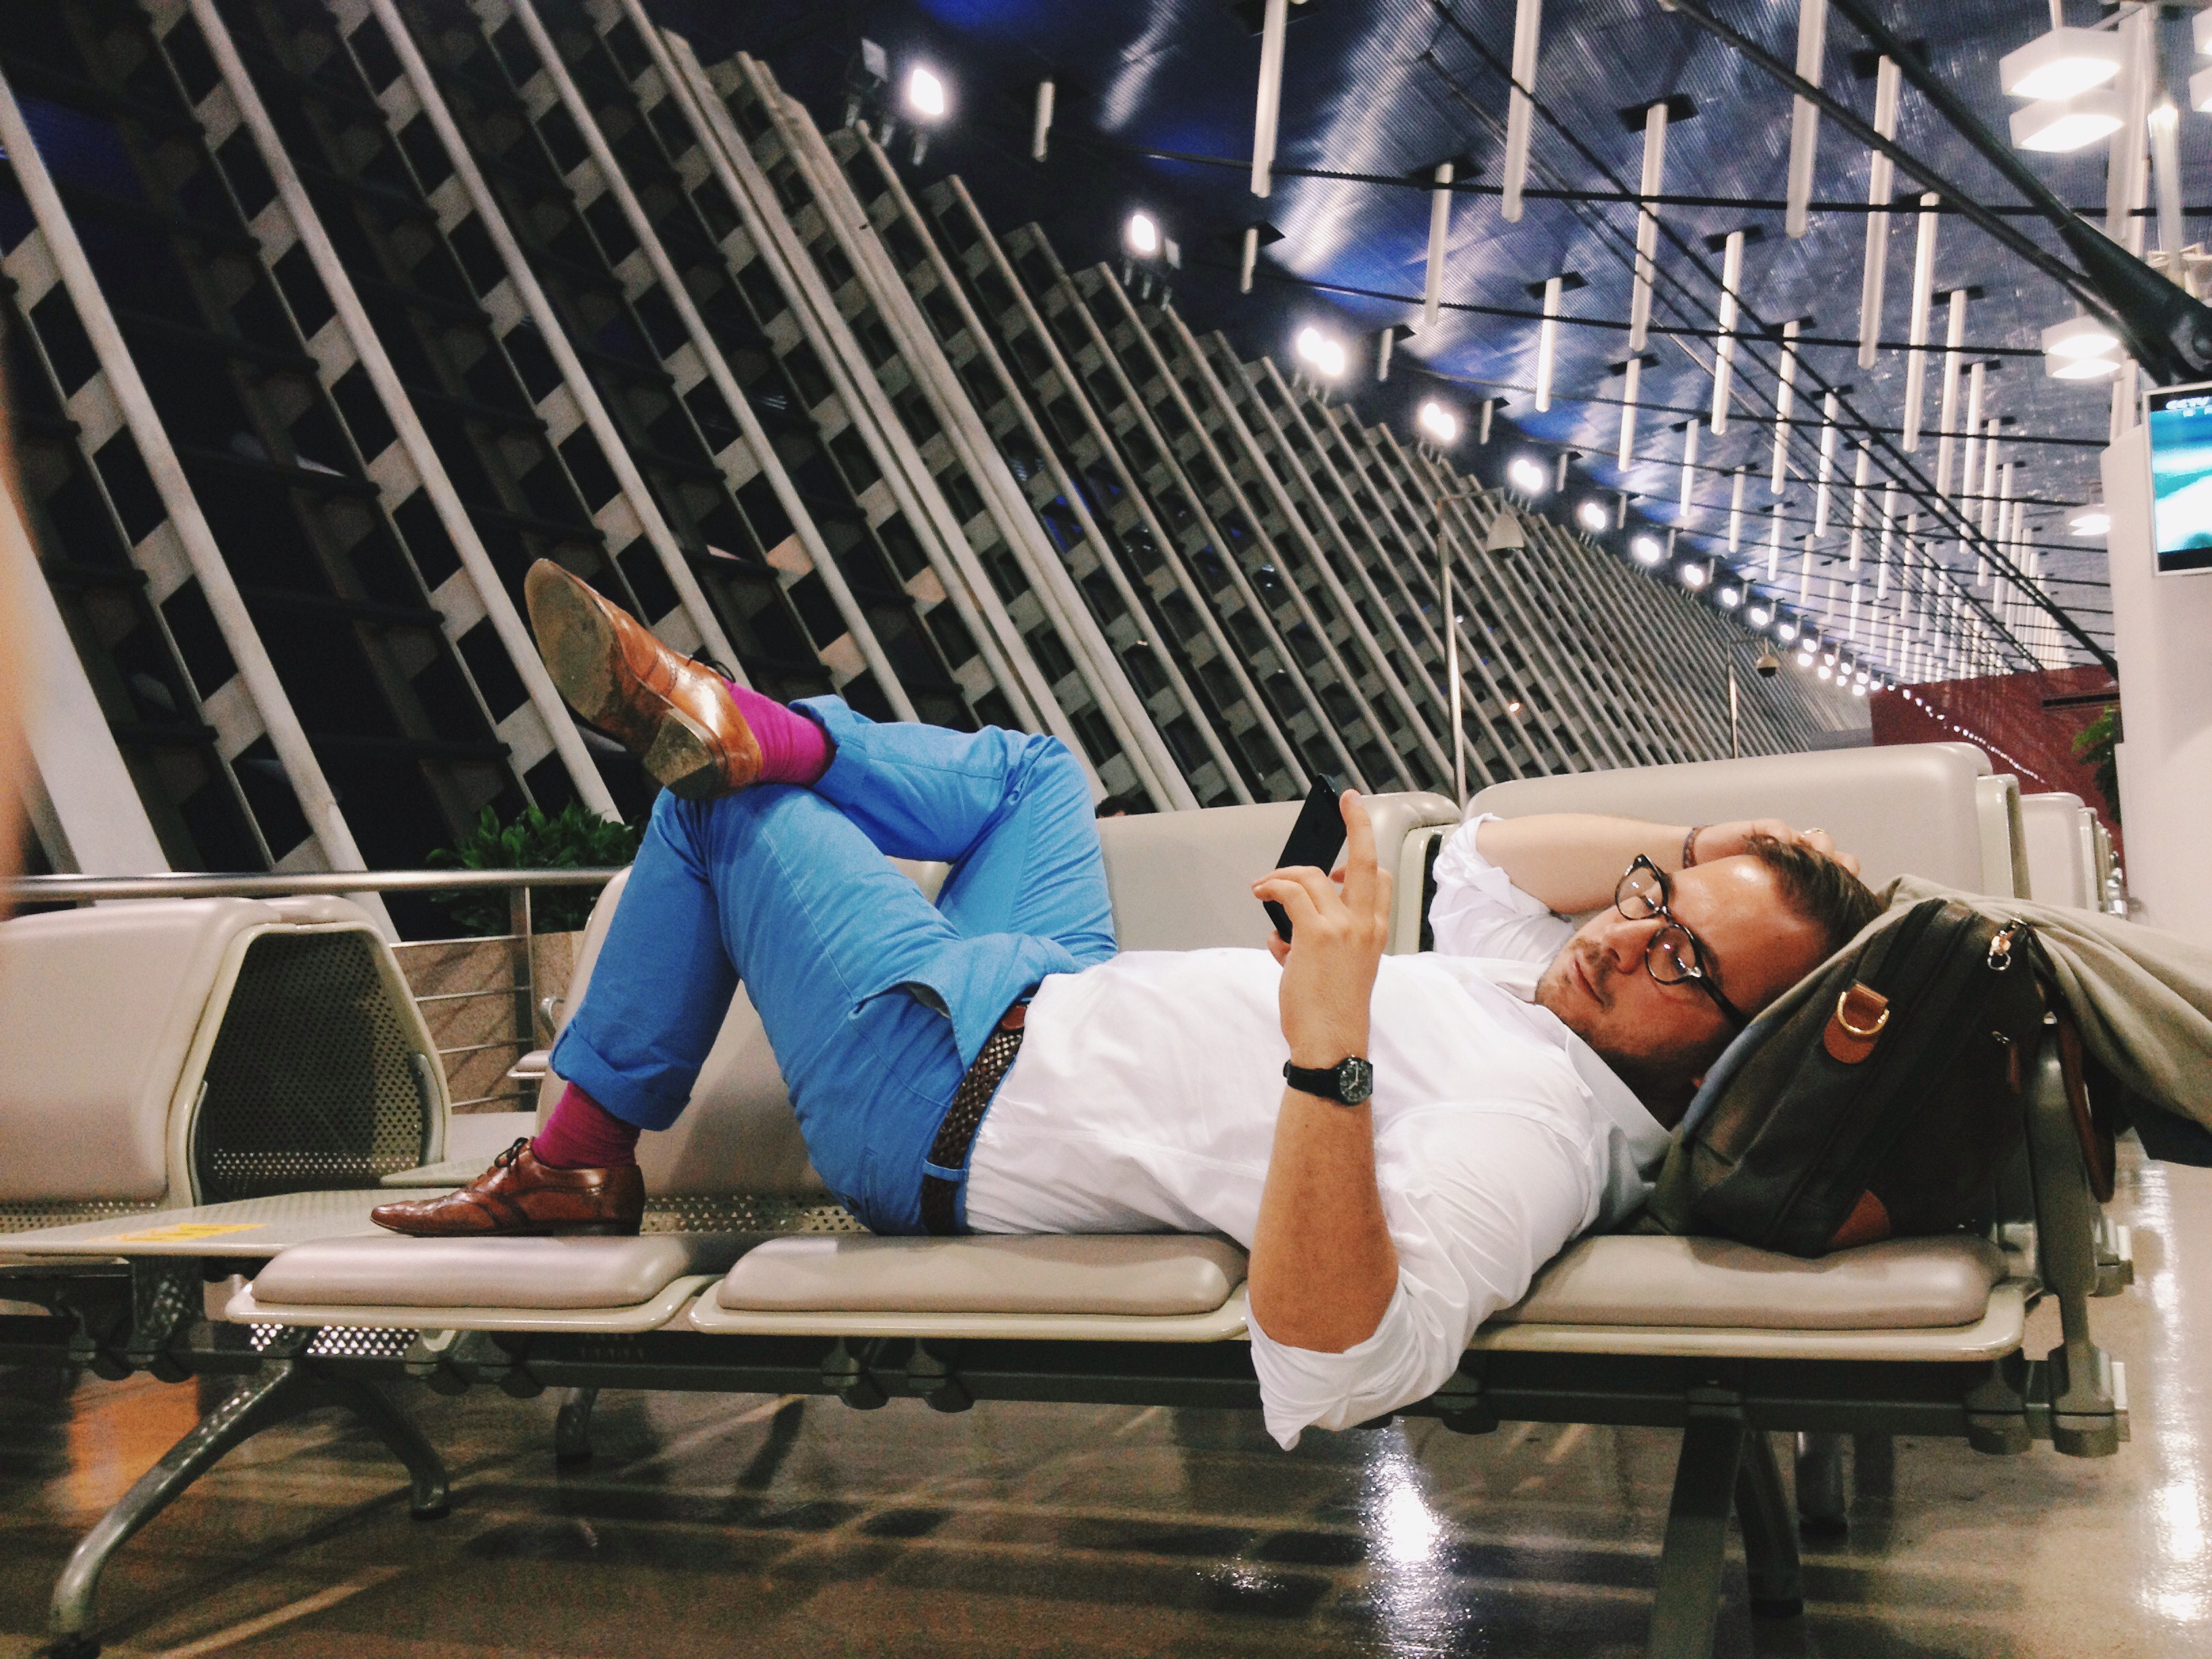 Čovek opušteno čeka svoj let u aerodromskoj čekaonici ležeći na spojenim sedištima i gledajući sadržaj na pametnom telefonu.